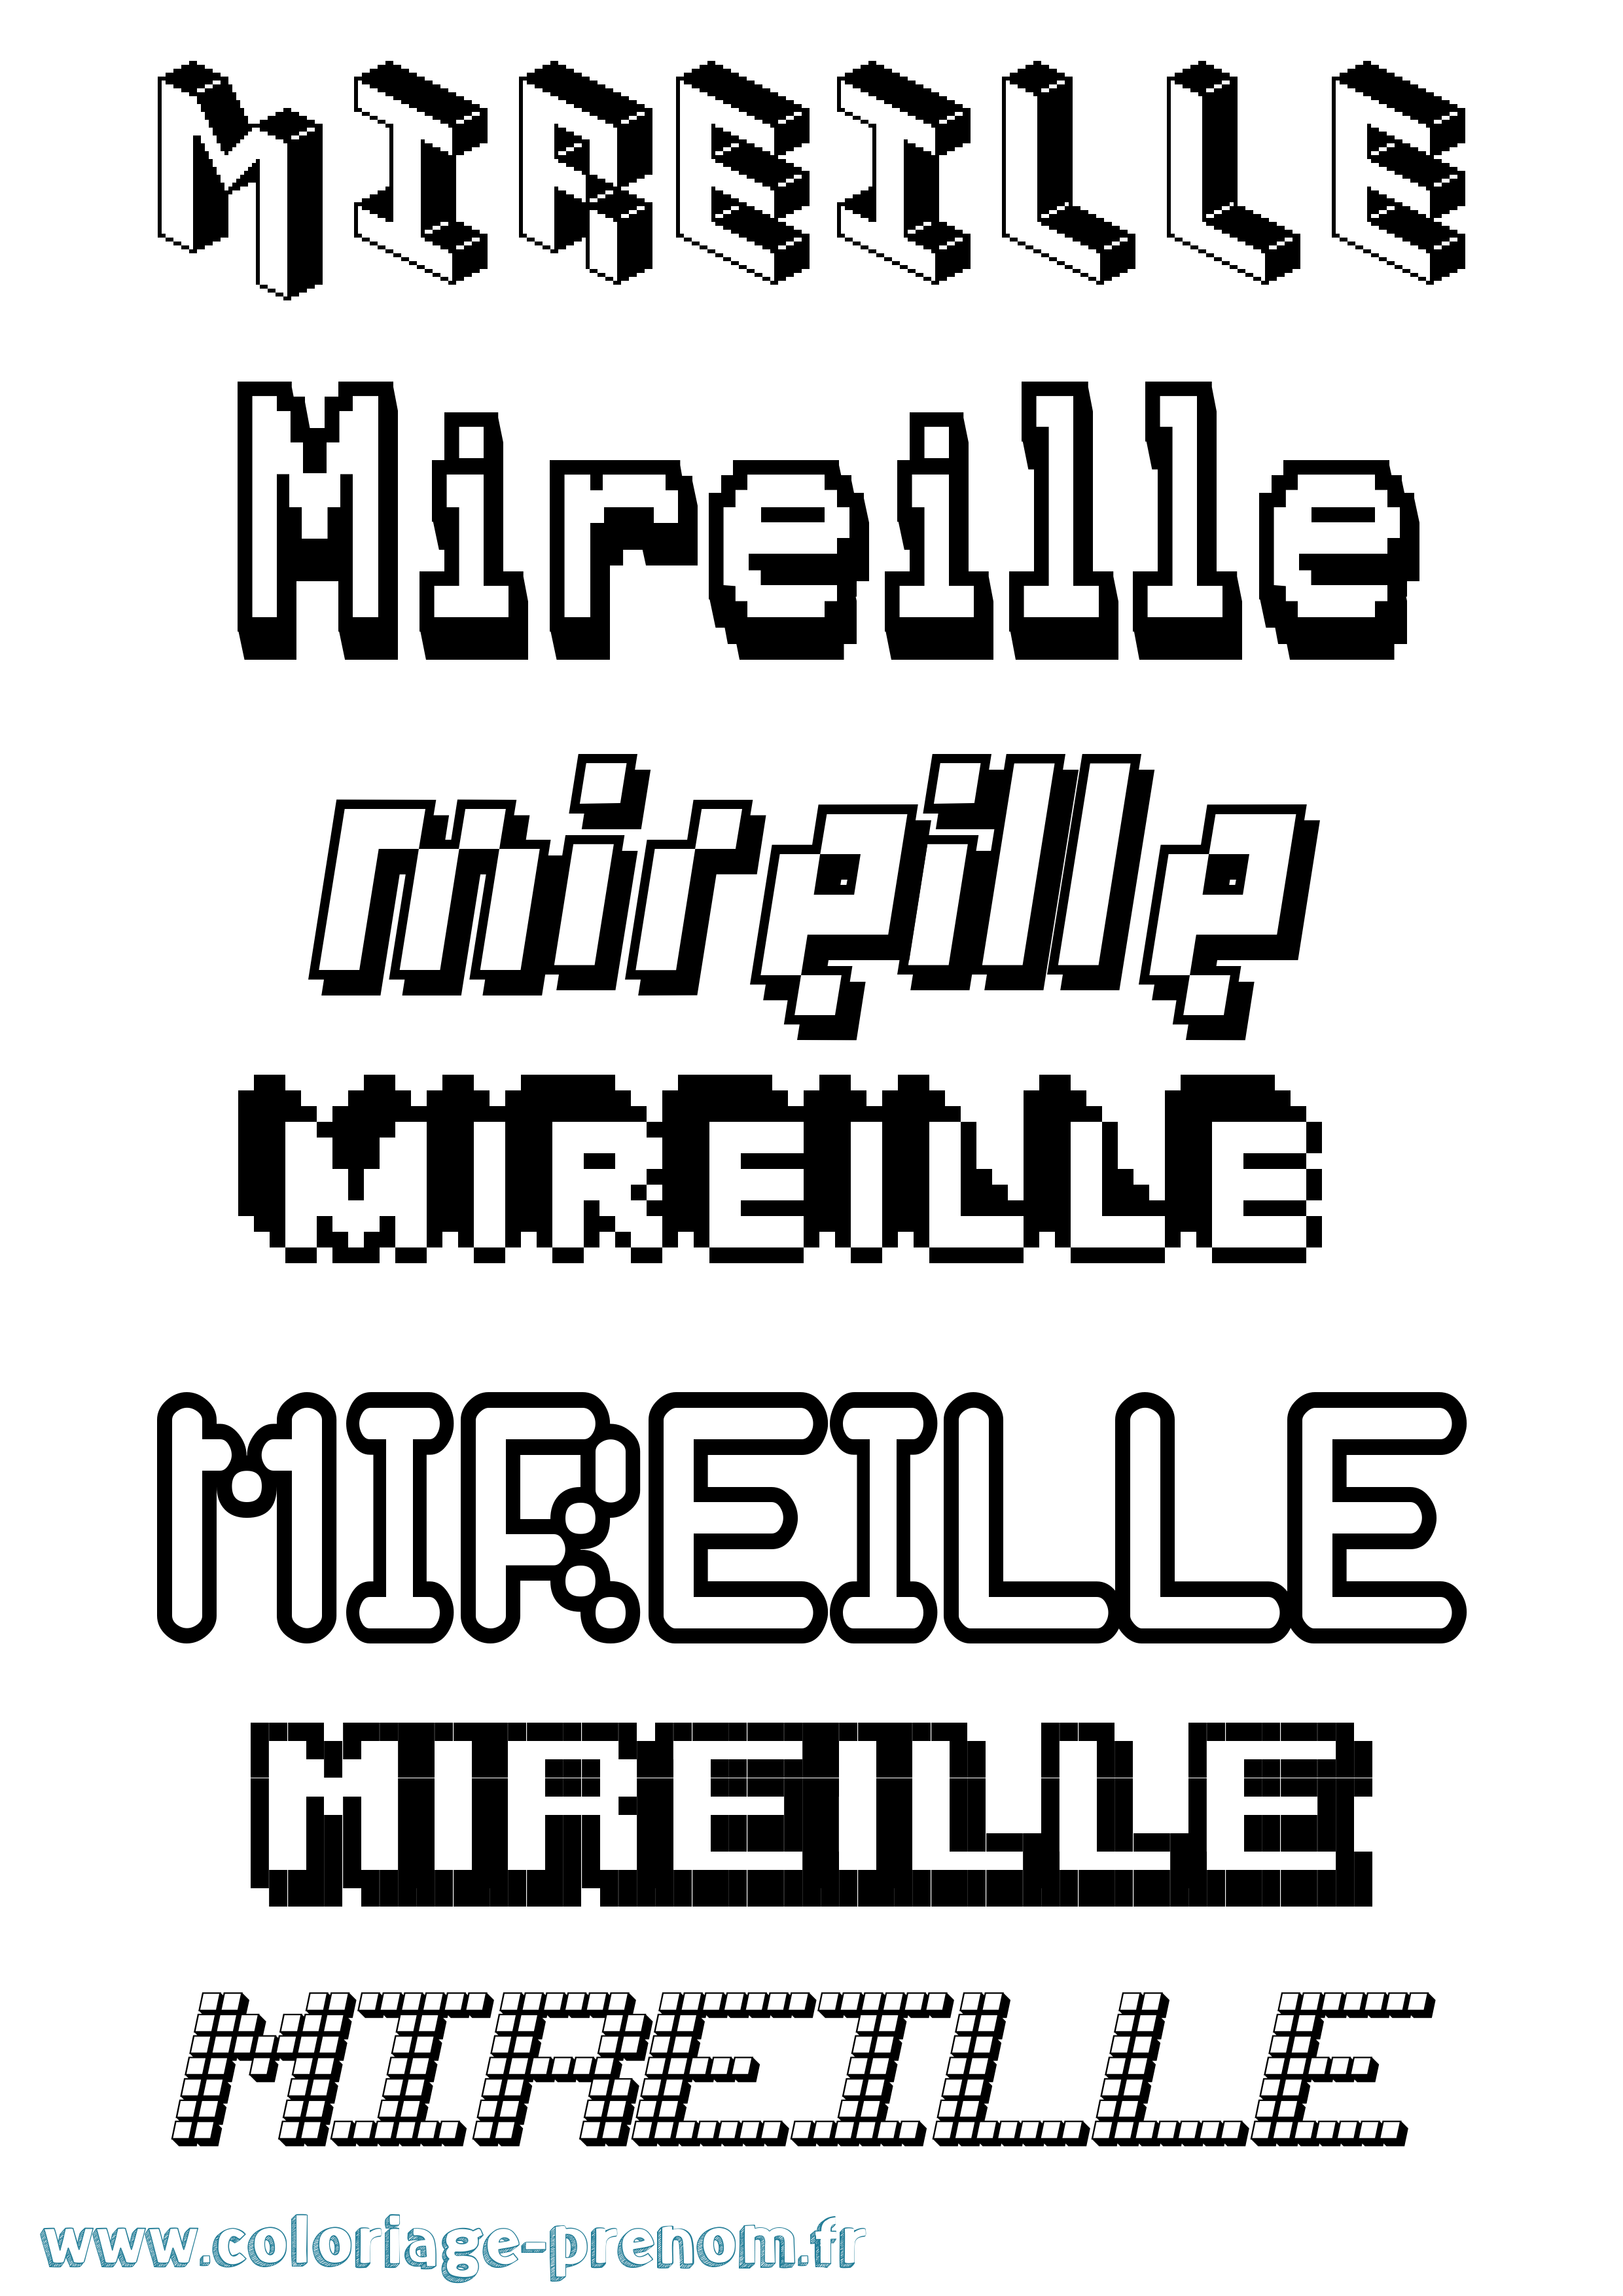 Coloriage prénom Mireille Pixel